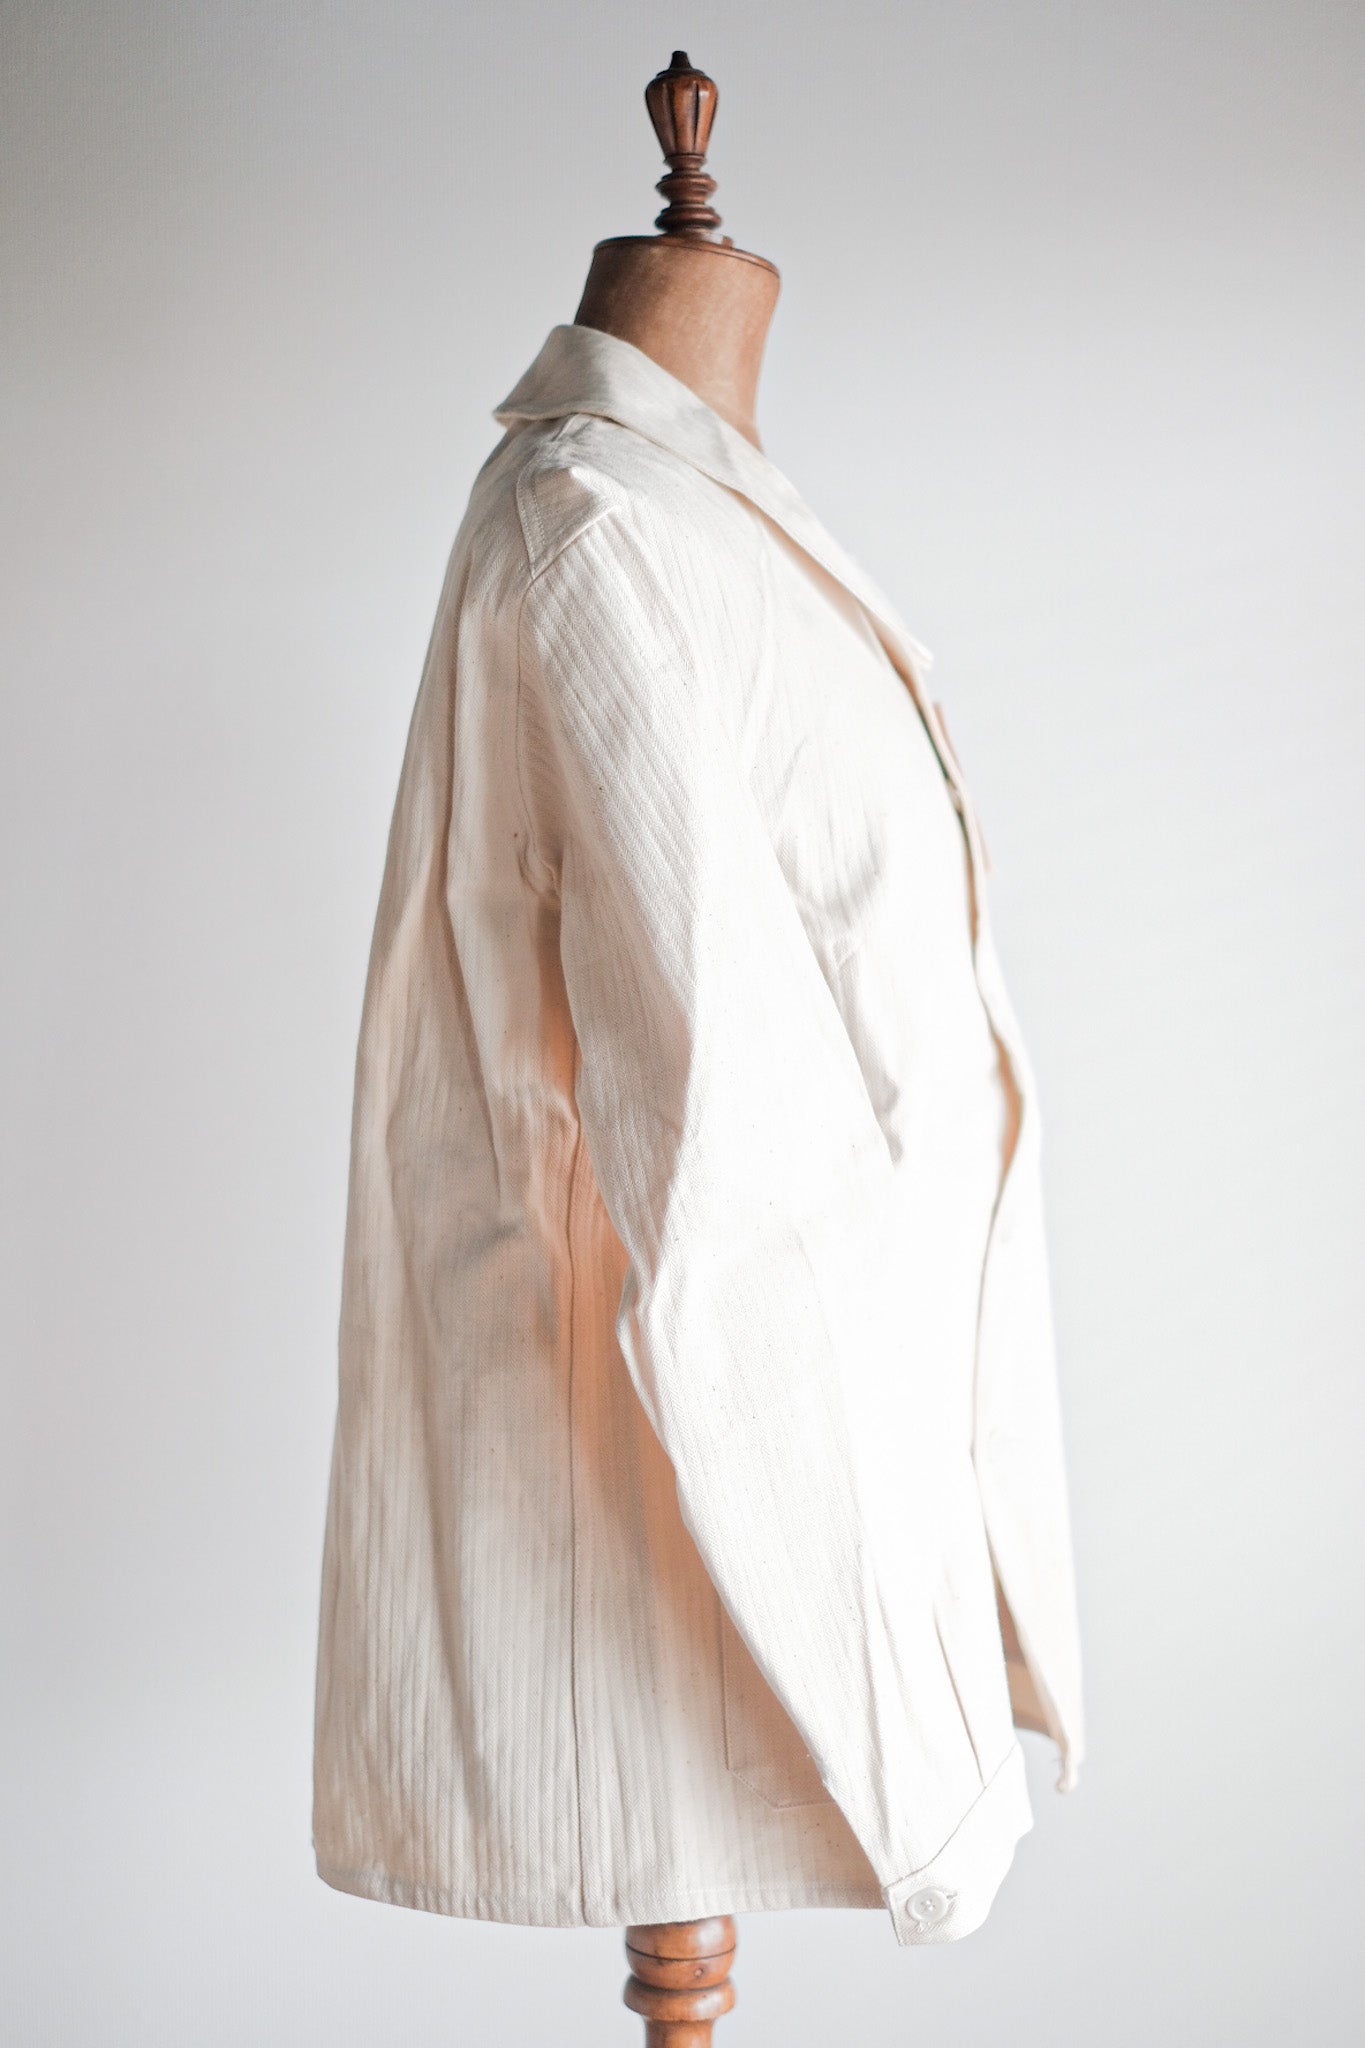 [~ 40 '] 프랑스 빈티지 흰색 면화 HBT 작업 재킷 "데드 스톡"